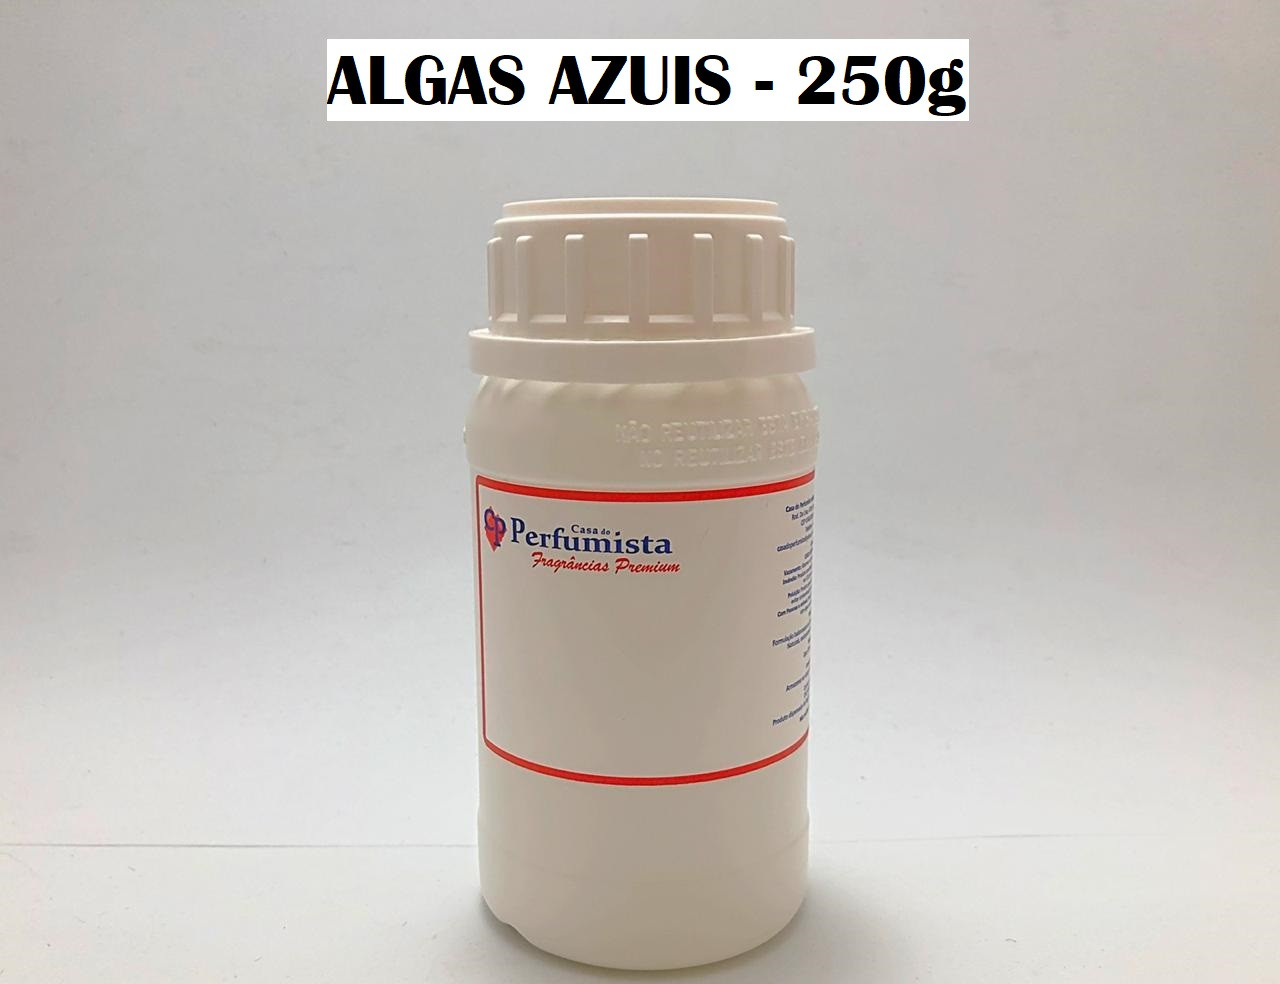 ALGAS AZUIS - 250g